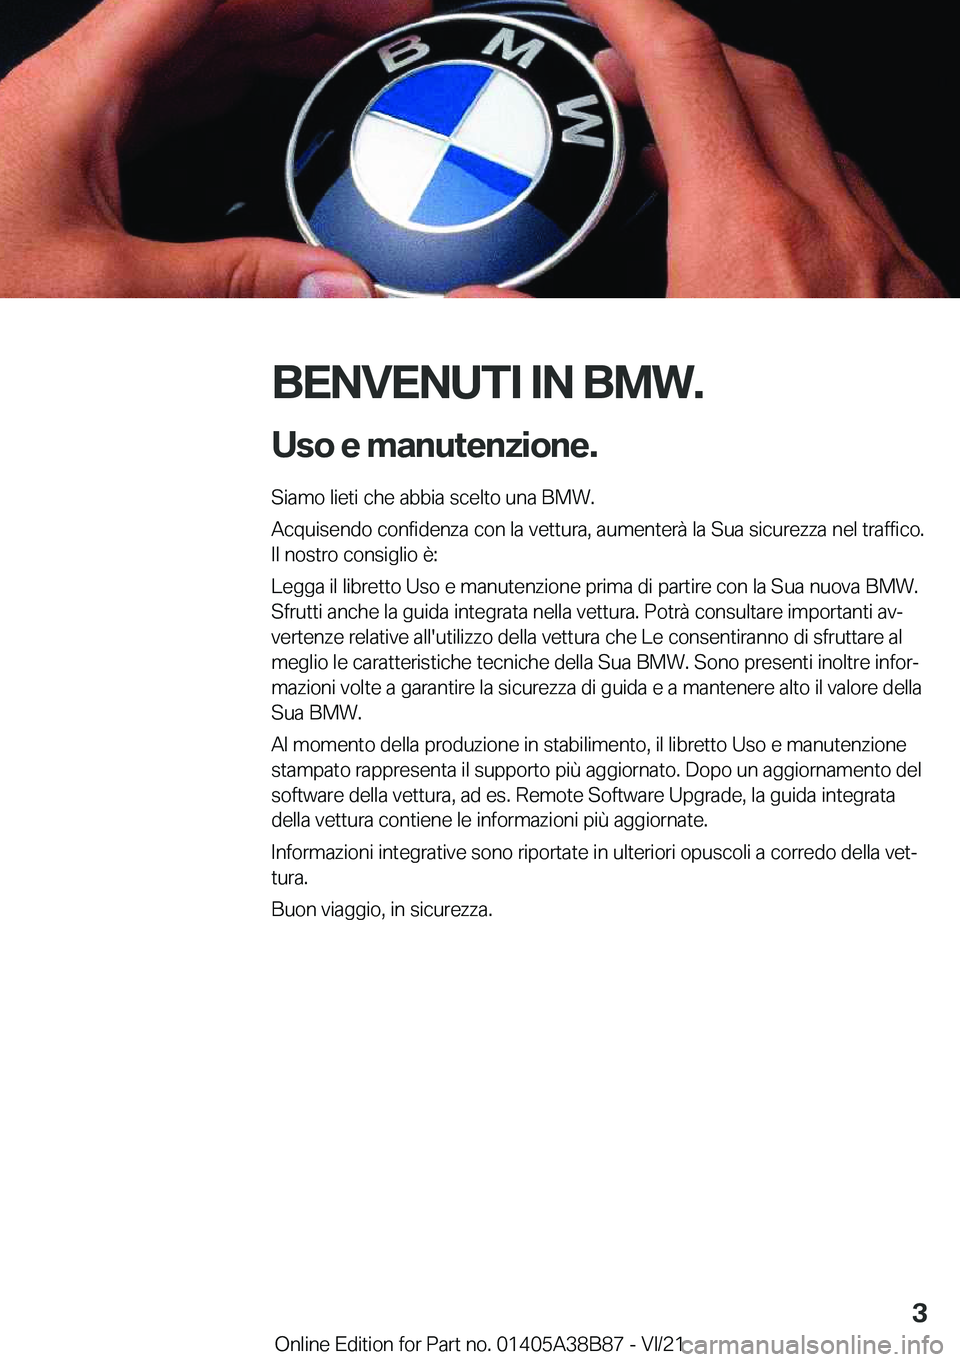 BMW M4 2022  Libretti Di Uso E manutenzione (in Italian) �B�E�N�V�E�N�U�T�I��I�N��B�M�W�.�U�s�o��e��m�a�n�u�t�e�n�z�i�o�n�e�.
�S�i�a�m�o��l�i�e�t�i��c�h�e��a�b�b�i�a��s�c�e�l�t�o��u�n�a��B�M�W�.
�A�c�q�u�i�s�e�n�d�o��c�o�n�f�i�d�e�n�z�a��c�o�n�